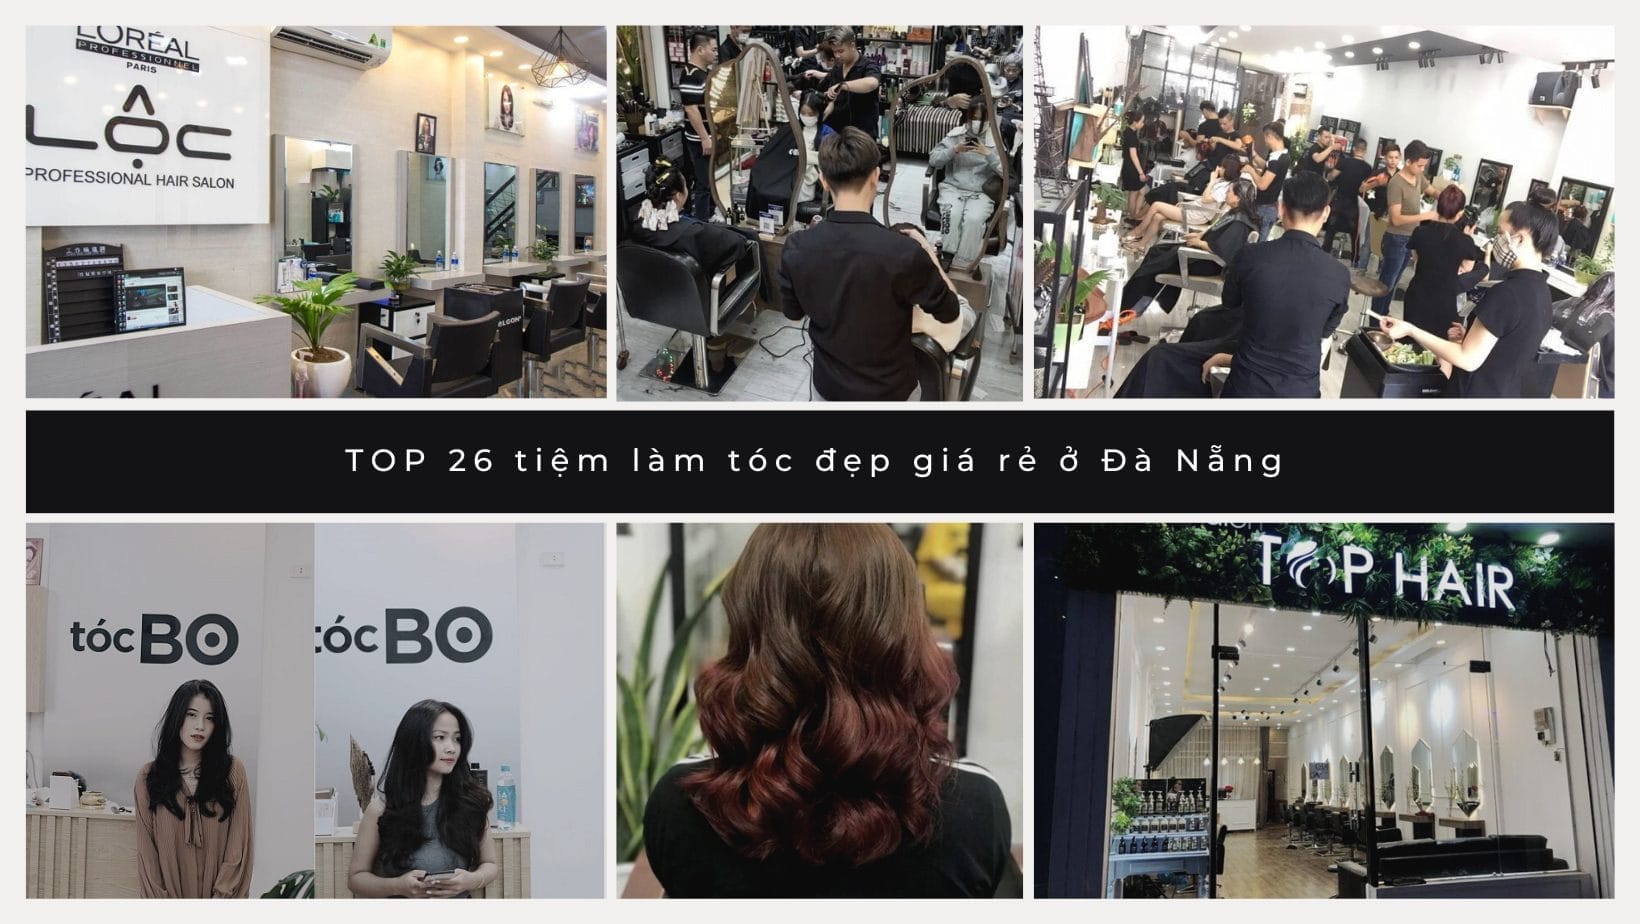 tiệm làm tóc đẹp giá rẻ ở Đà Nẵng